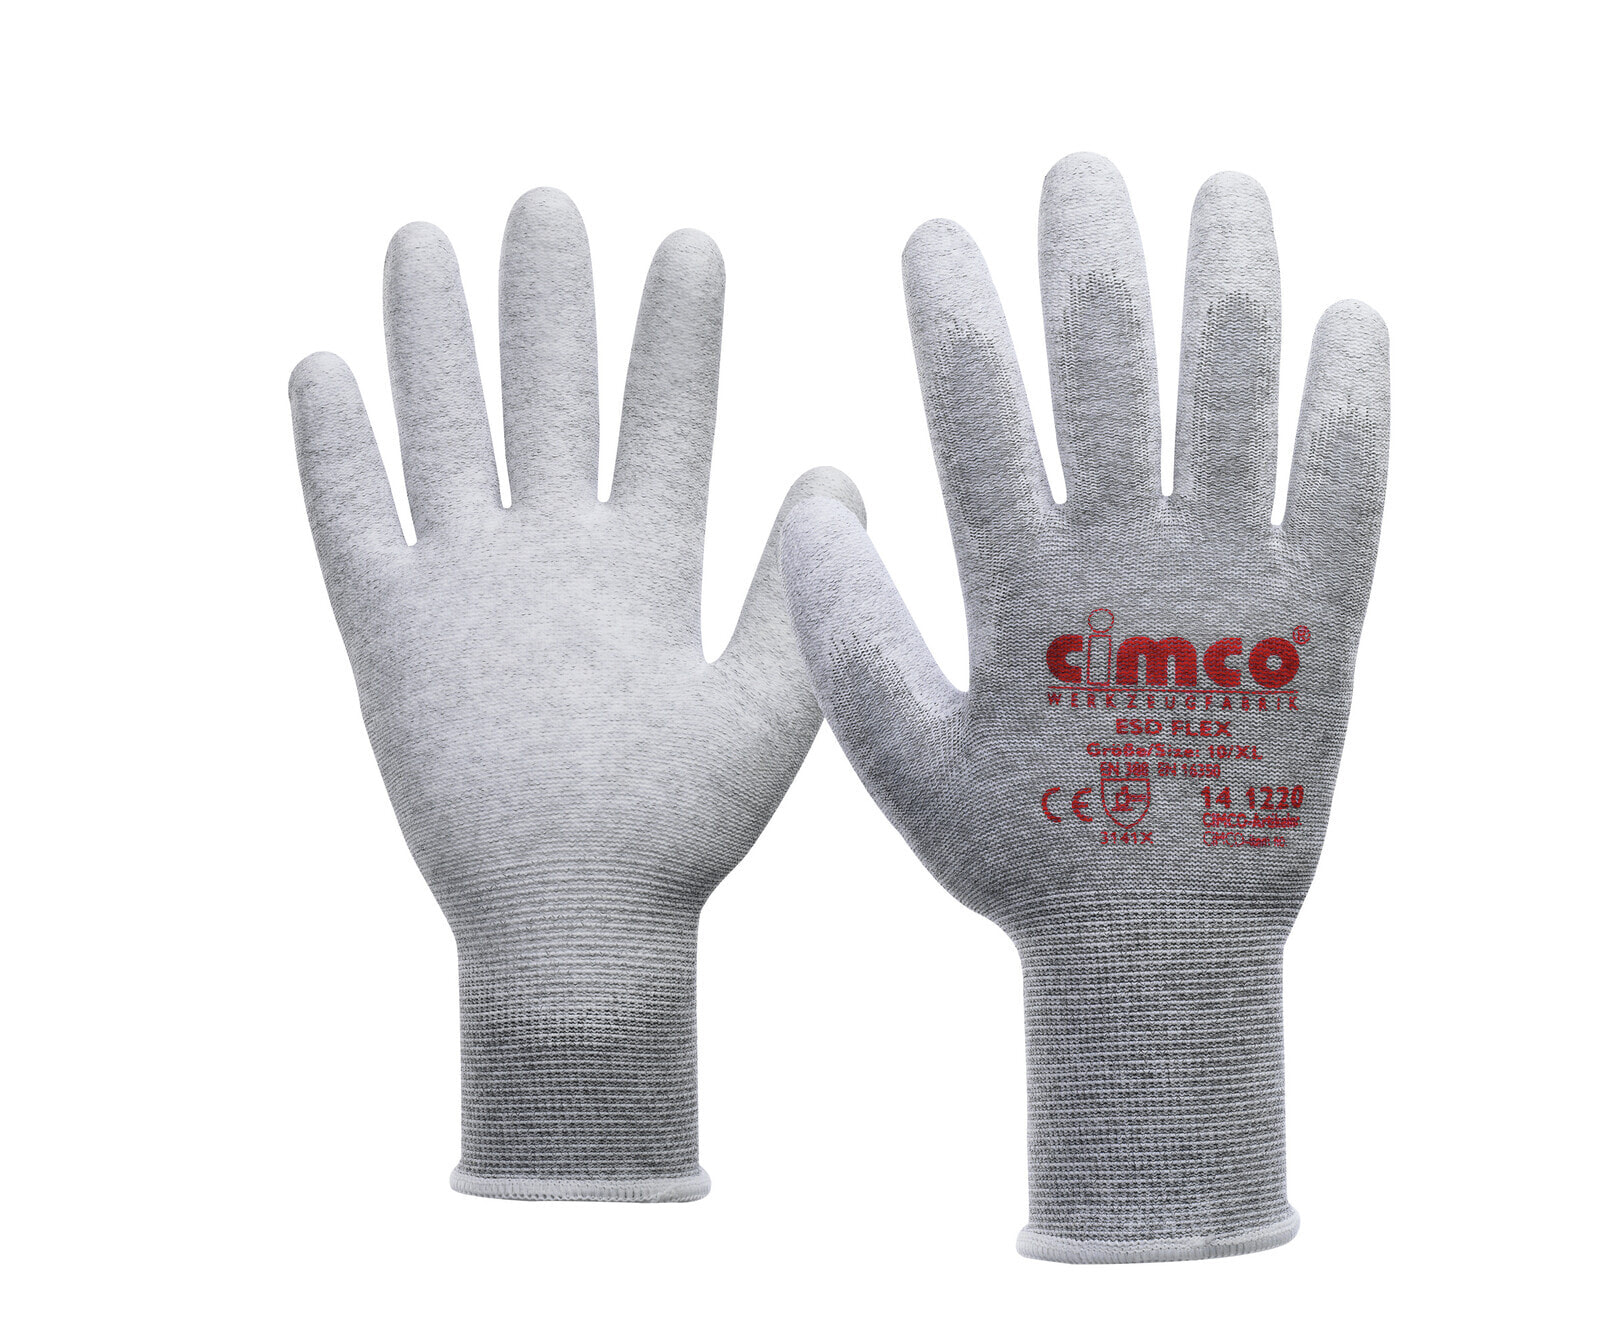 Cimco 141219 - Workshop gloves - Grey - L - EUE - Adult - Unisex